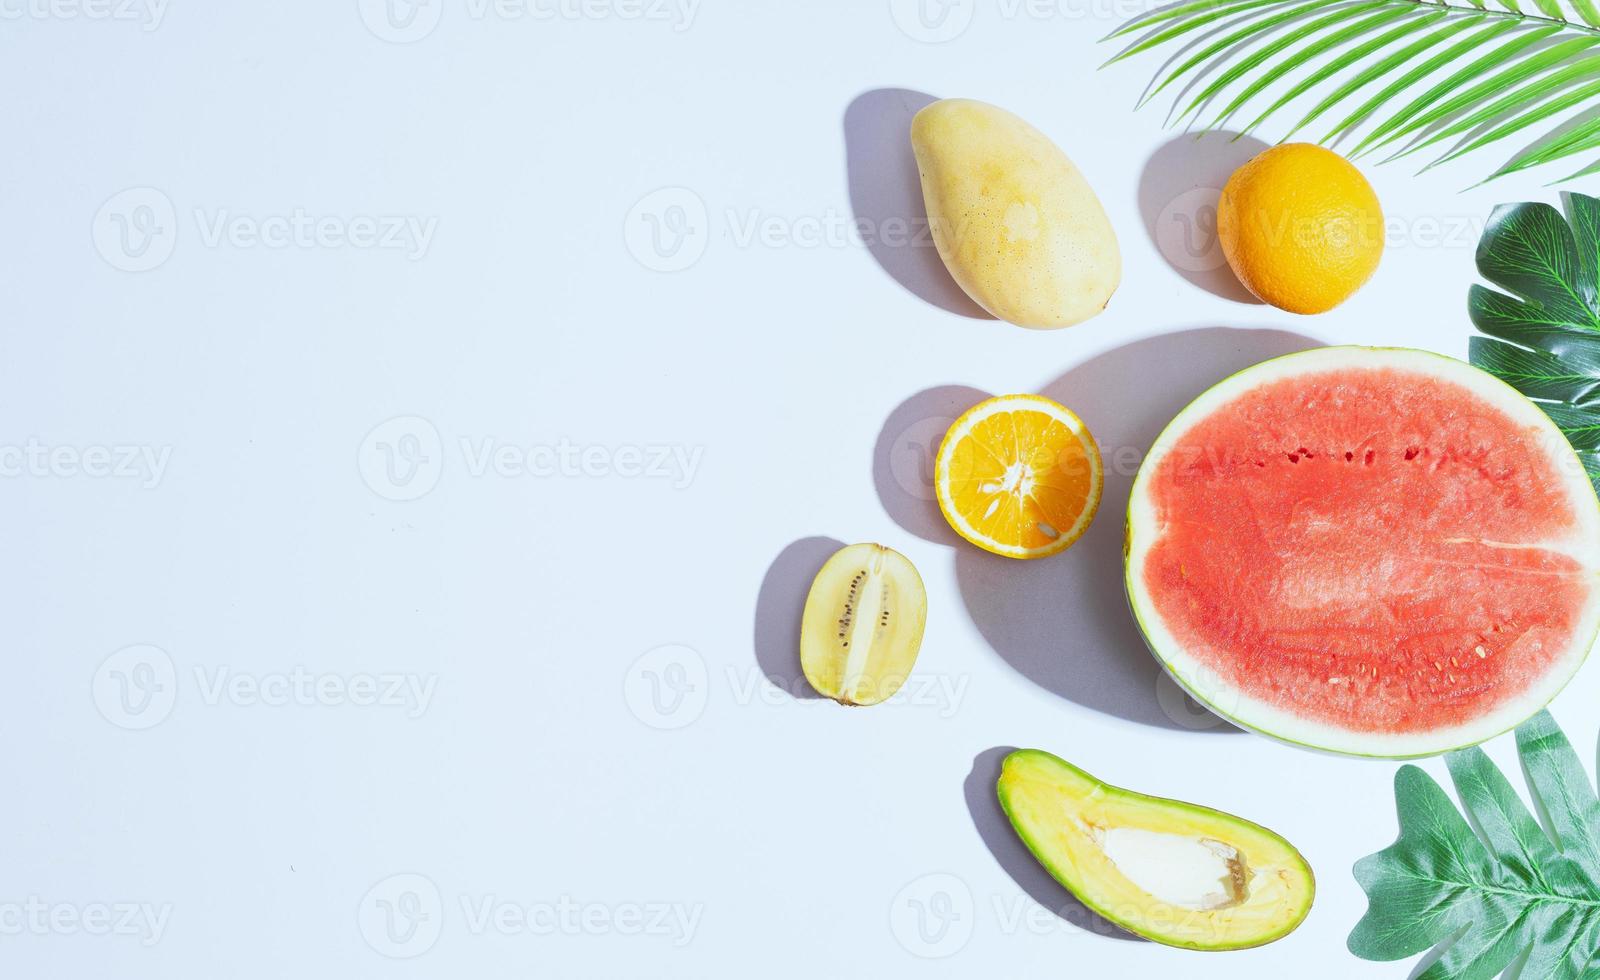 tropiska frukter som mango, apelsin, vattenmelon, avokado är ordnade på en vit bakgrund foto